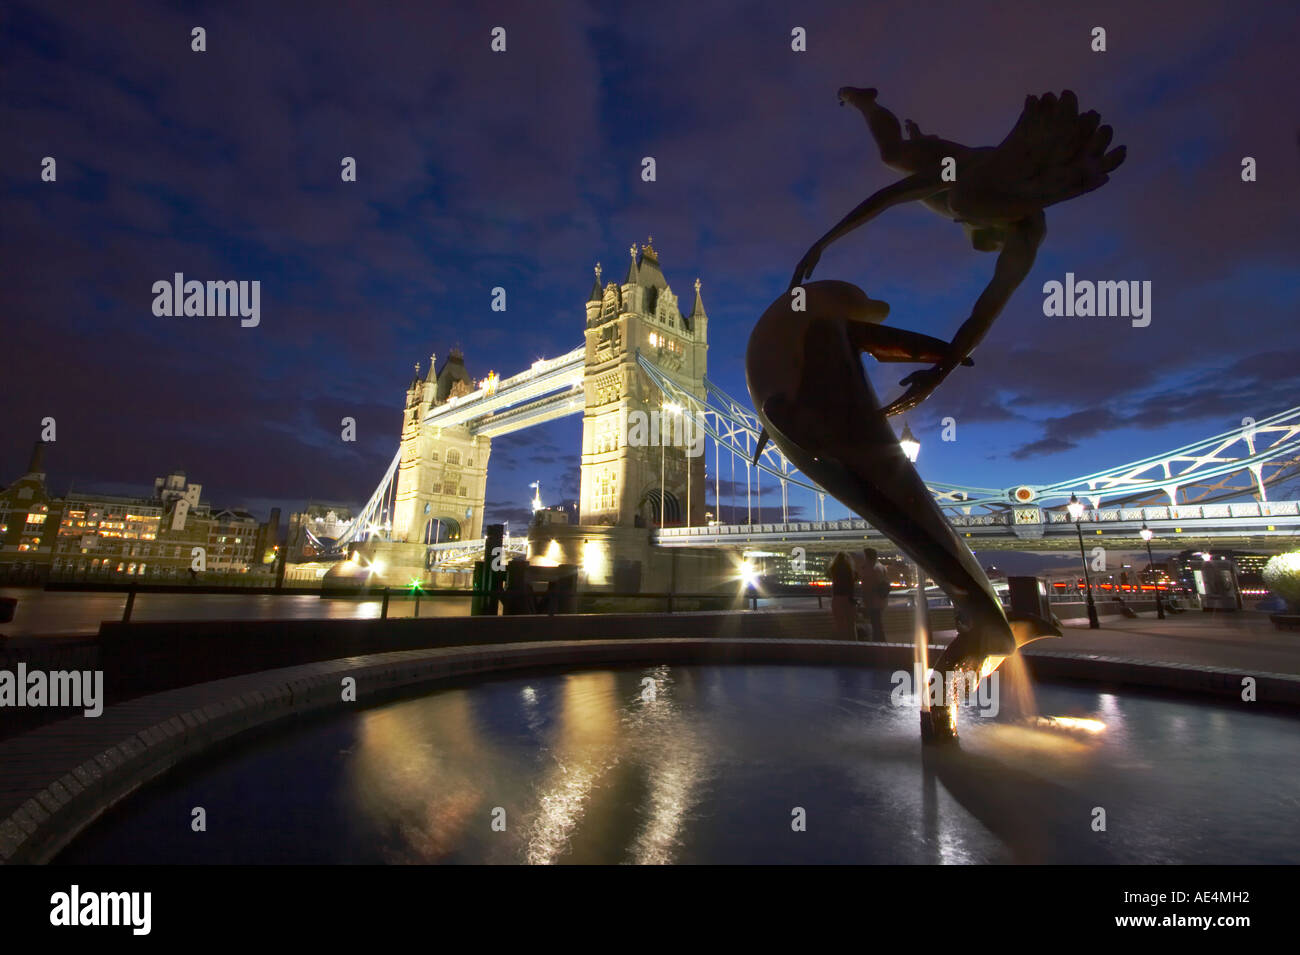 Tower Bridge beleuchtet in der Nacht mit Magd und Dolphin Statue, London Stockfoto